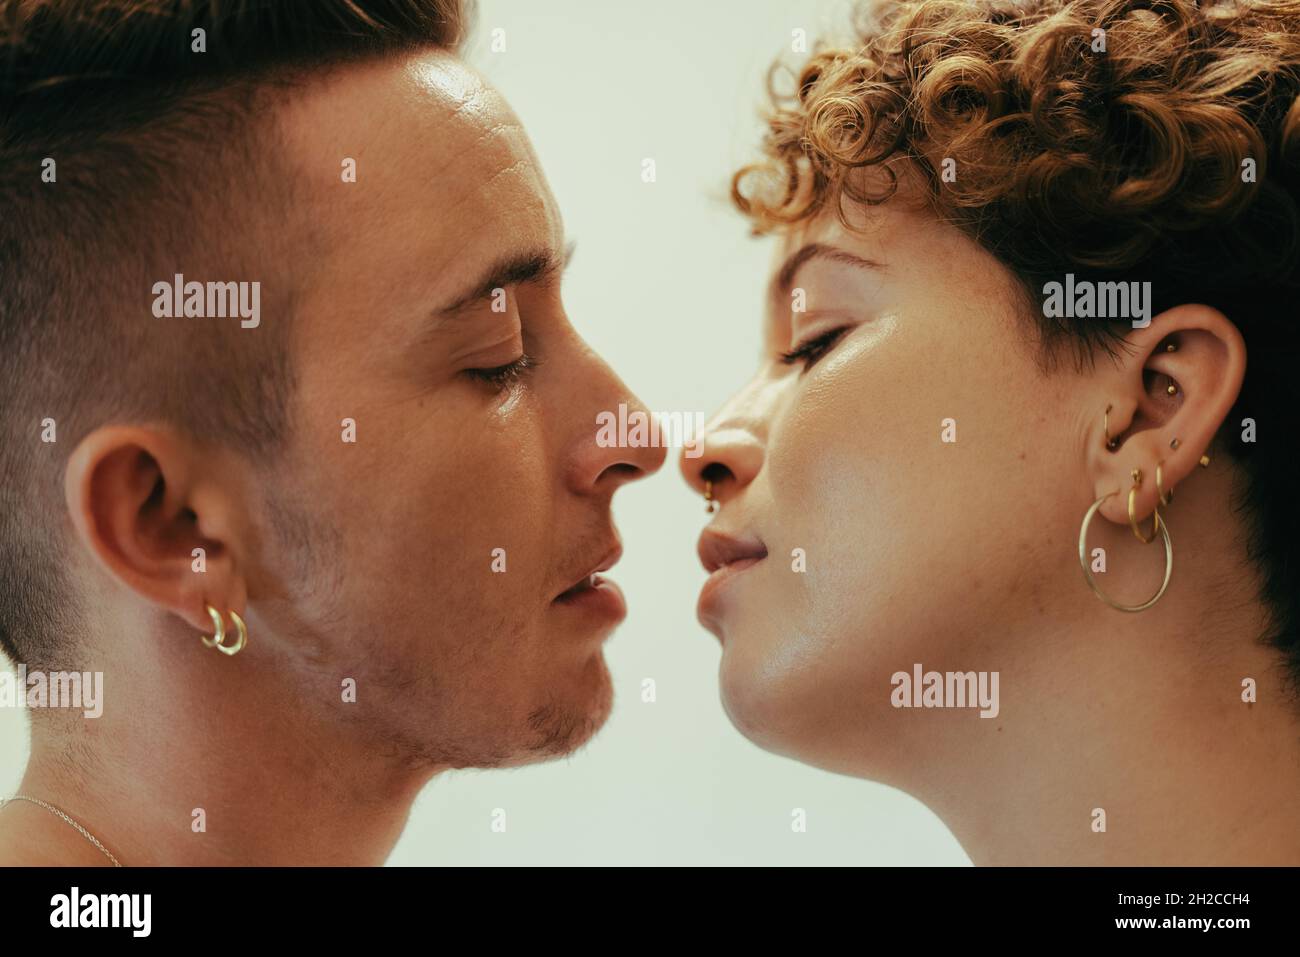 Ein romantisches Paar, das sich küsst. Liebevolles junges queeres Paar, das mit geschlossenen Augen dicht beieinander steht. Junge LGBTQ+ Paare teilen Stockfoto